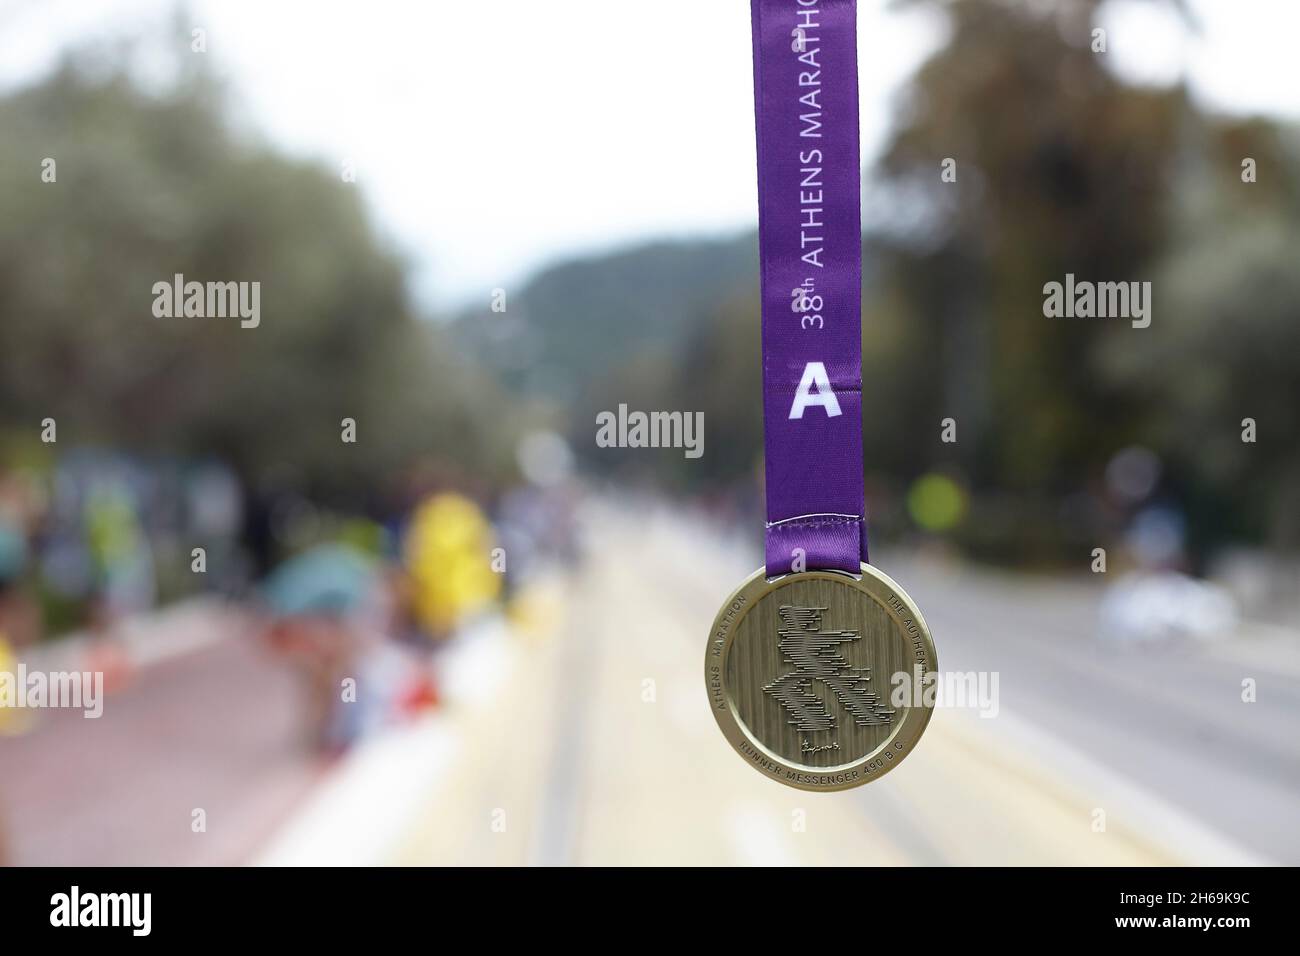 Athens marathon medal Stock Photo